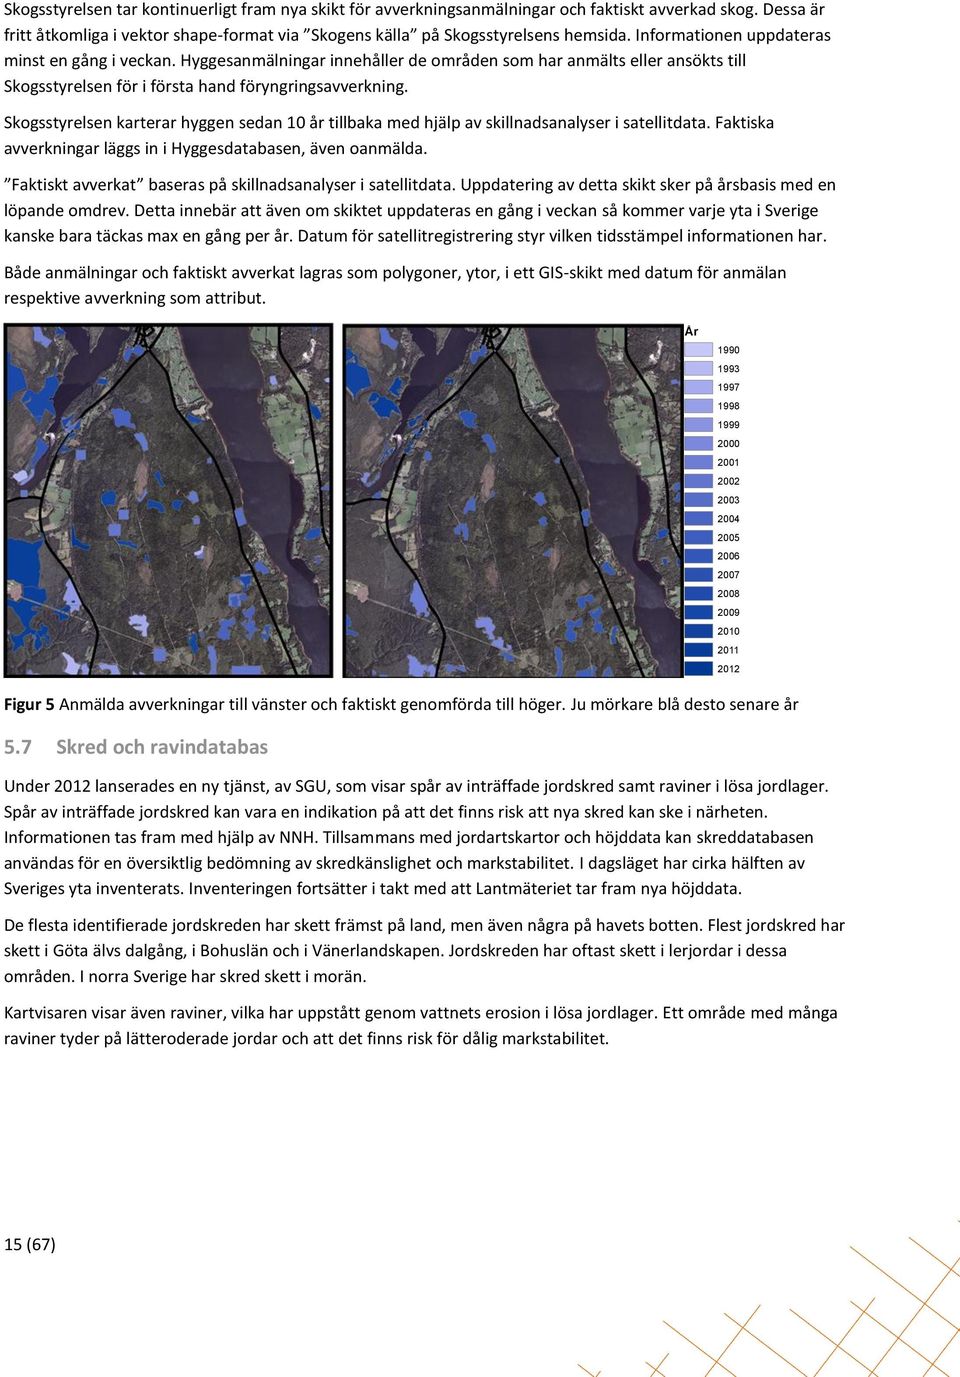 Skogsstyrelsen karterar hyggen sedan 10 år tillbaka med hjälp av skillnadsanalyser i satellitdata. Faktiska avverkningar läggs in i Hyggesdatabasen, även oanmälda.